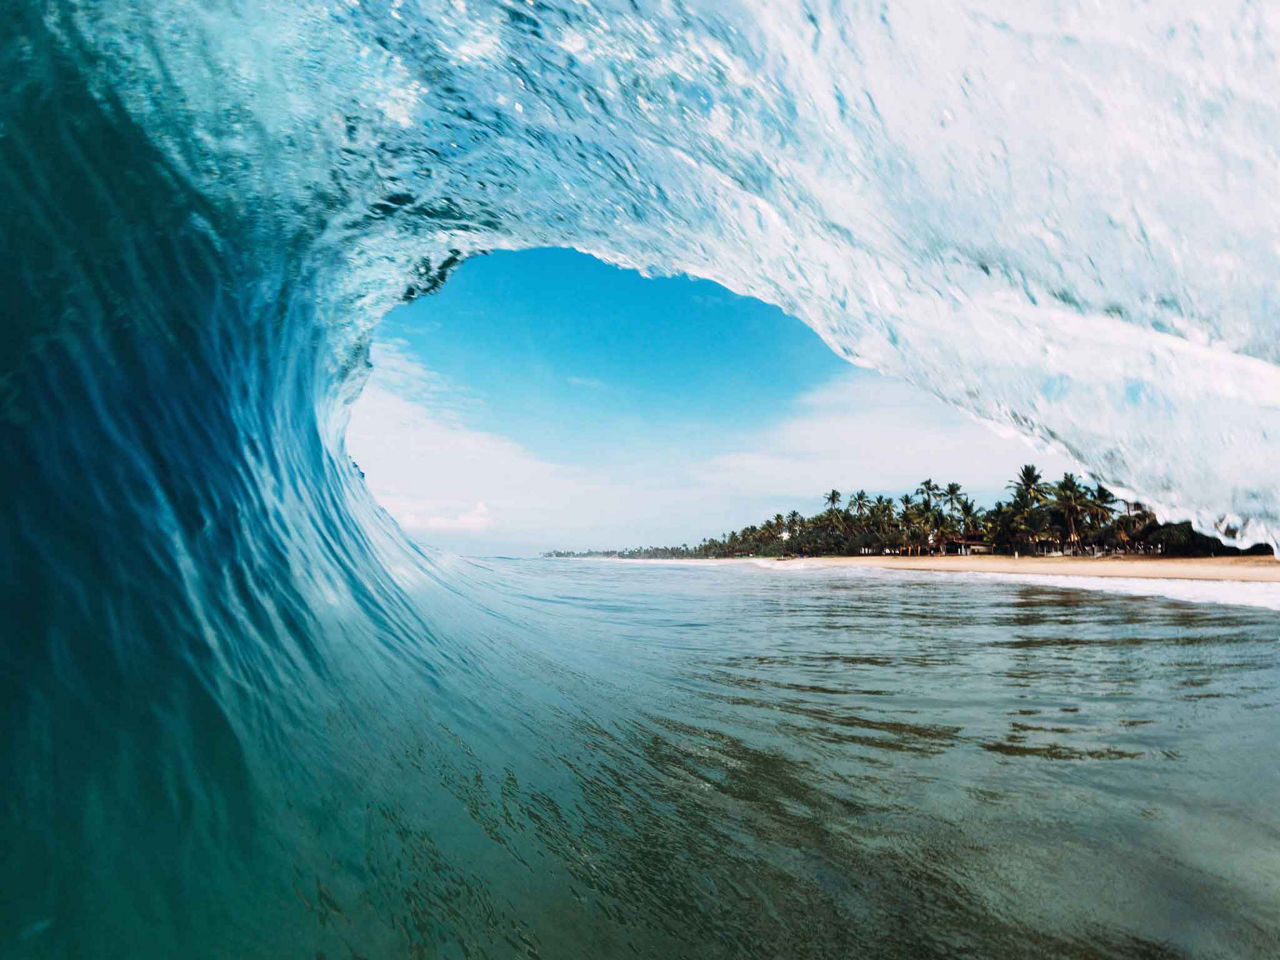 Large Ocean Wave